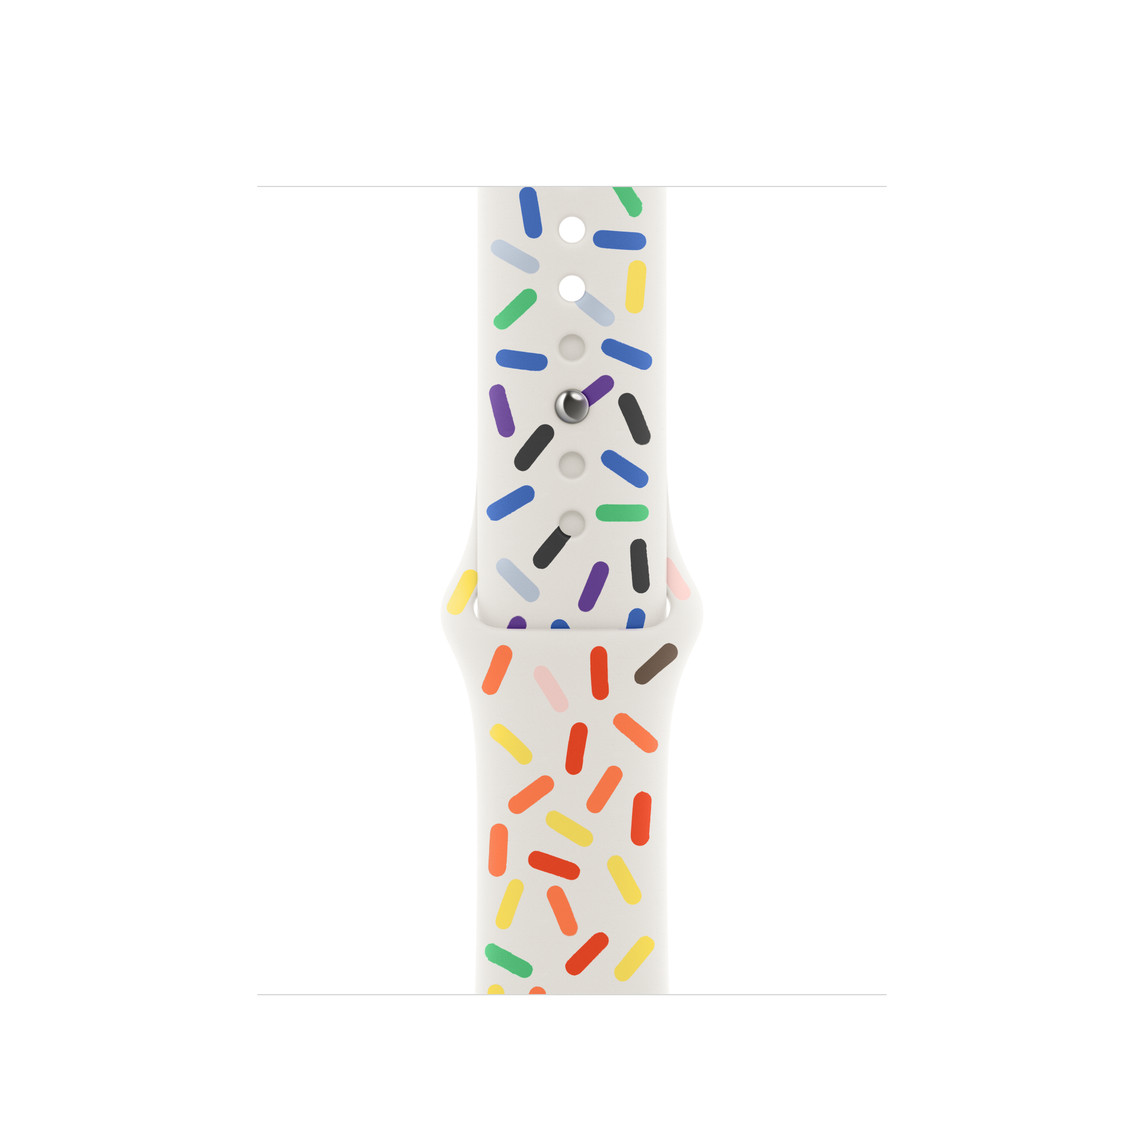 Correa deportiva Edición Orgullo blanca con diseño de óvalos opacos de varios colores del arcoíris, en fluoroelastómero suave y cierre de clip